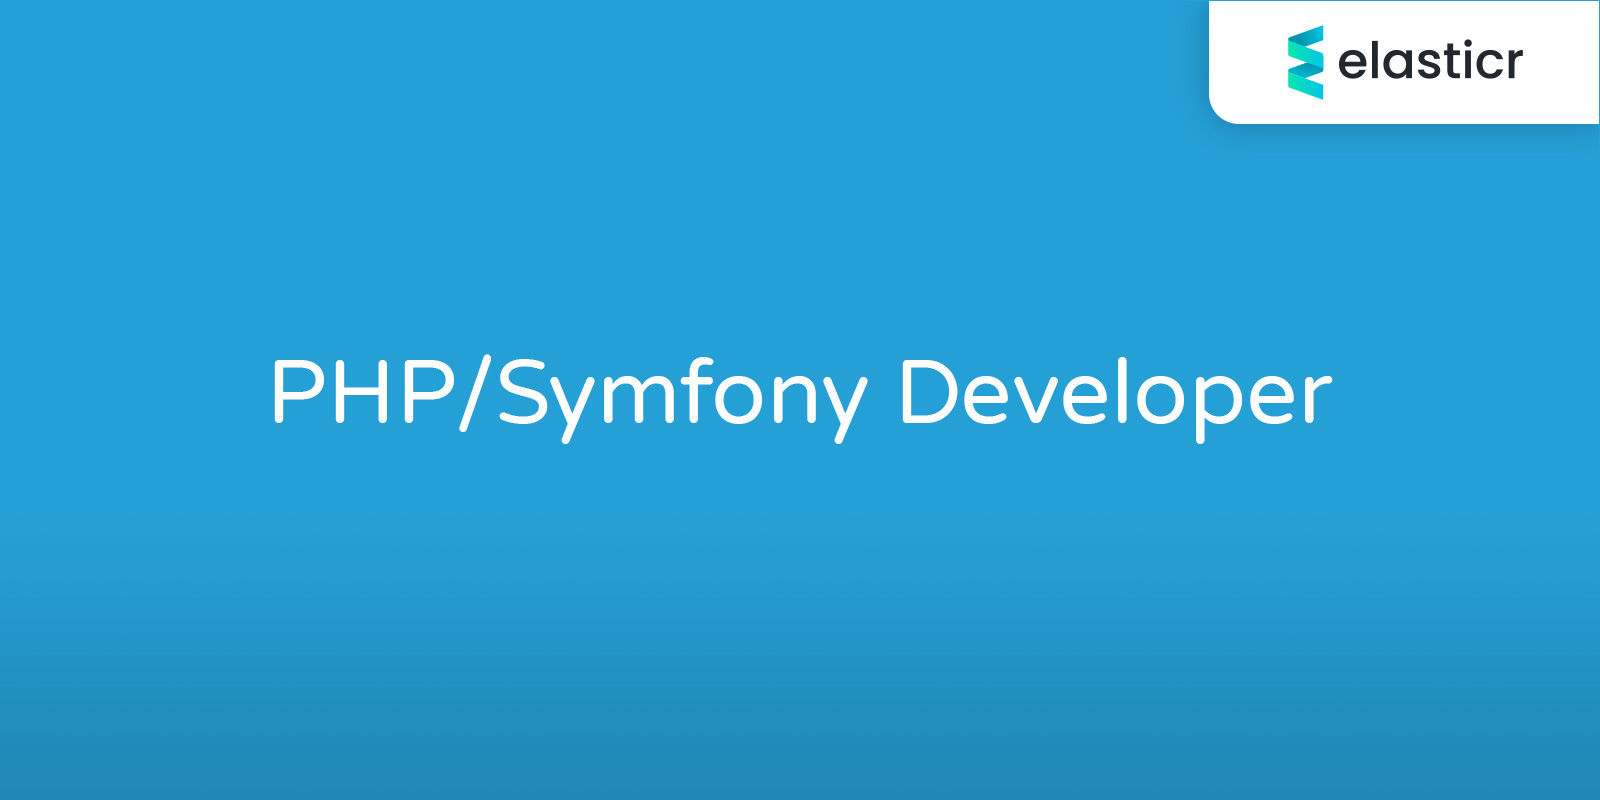 PHP/Symfony Developer